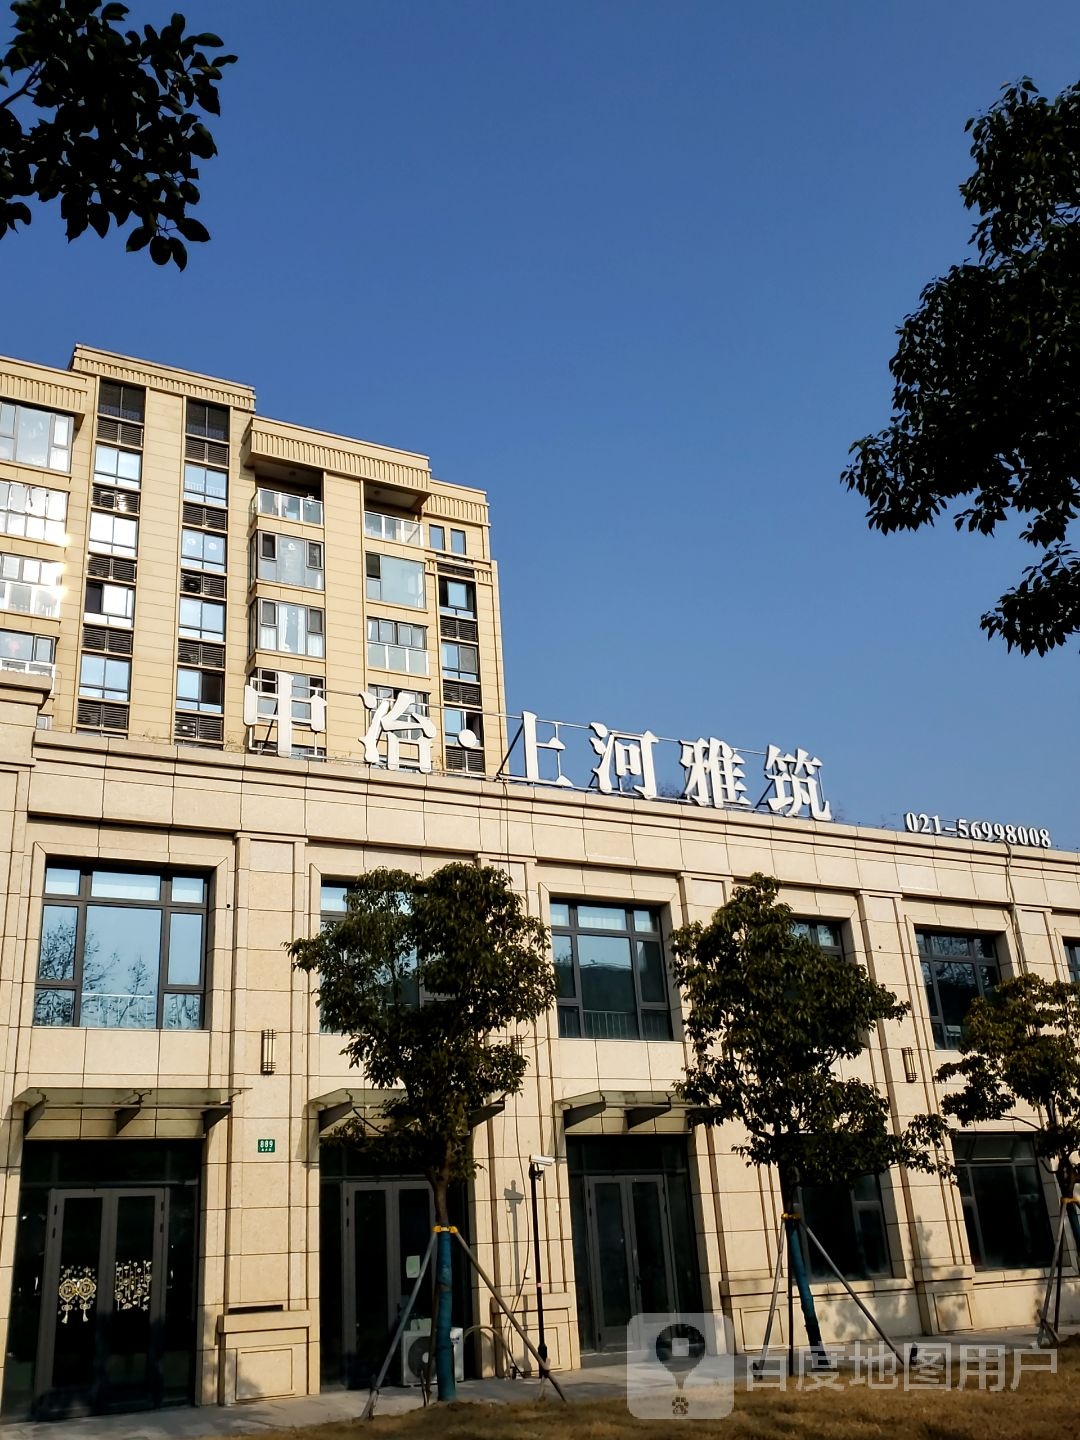 上海市宝山区盘古路上海宝钢冶金建设公司泗塘公寓东北侧约60米